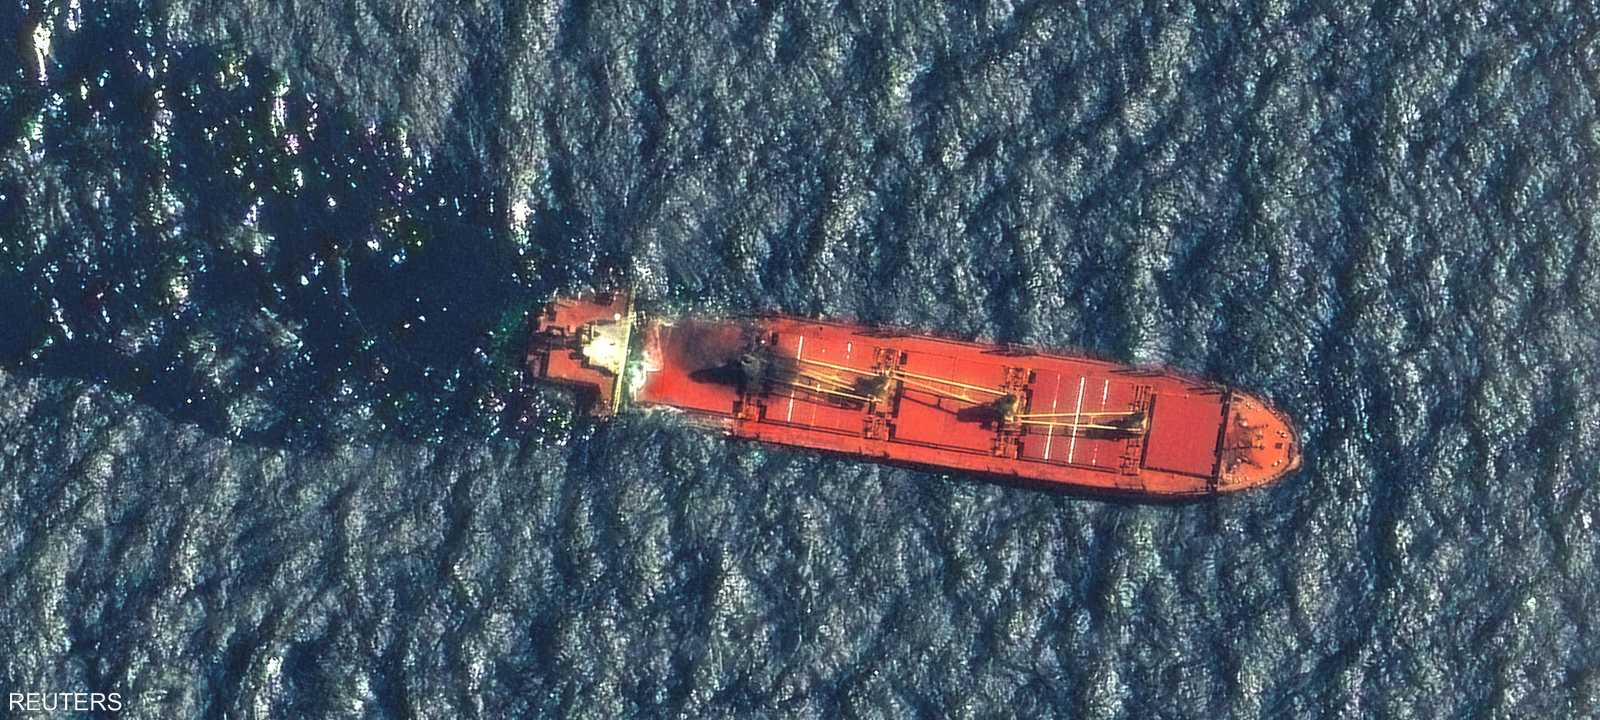 صورة تظهر سفينة الشحن روبيمار قبل غرقها في البحر الأحمر